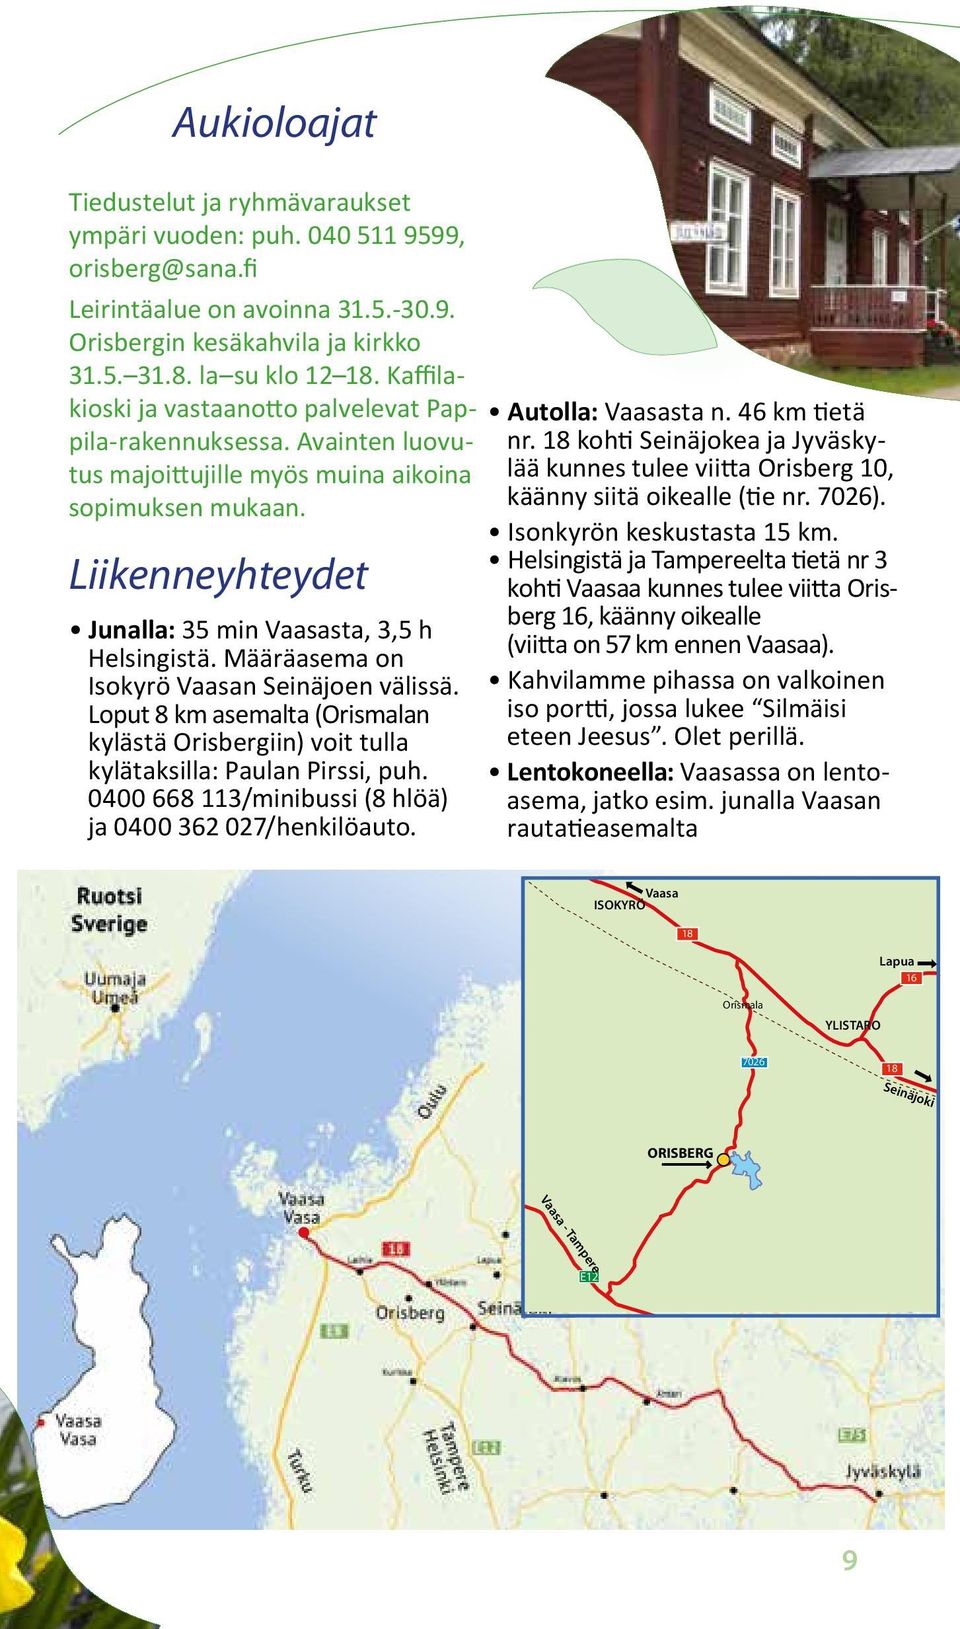 Määräasema on Isokyrö Vaasan Seinäjoen välissä. Loput 8 km asemalta (Orismalan kylästä Orisbergiin) voit tulla kylätaksilla: Paulan Pirssi, puh.